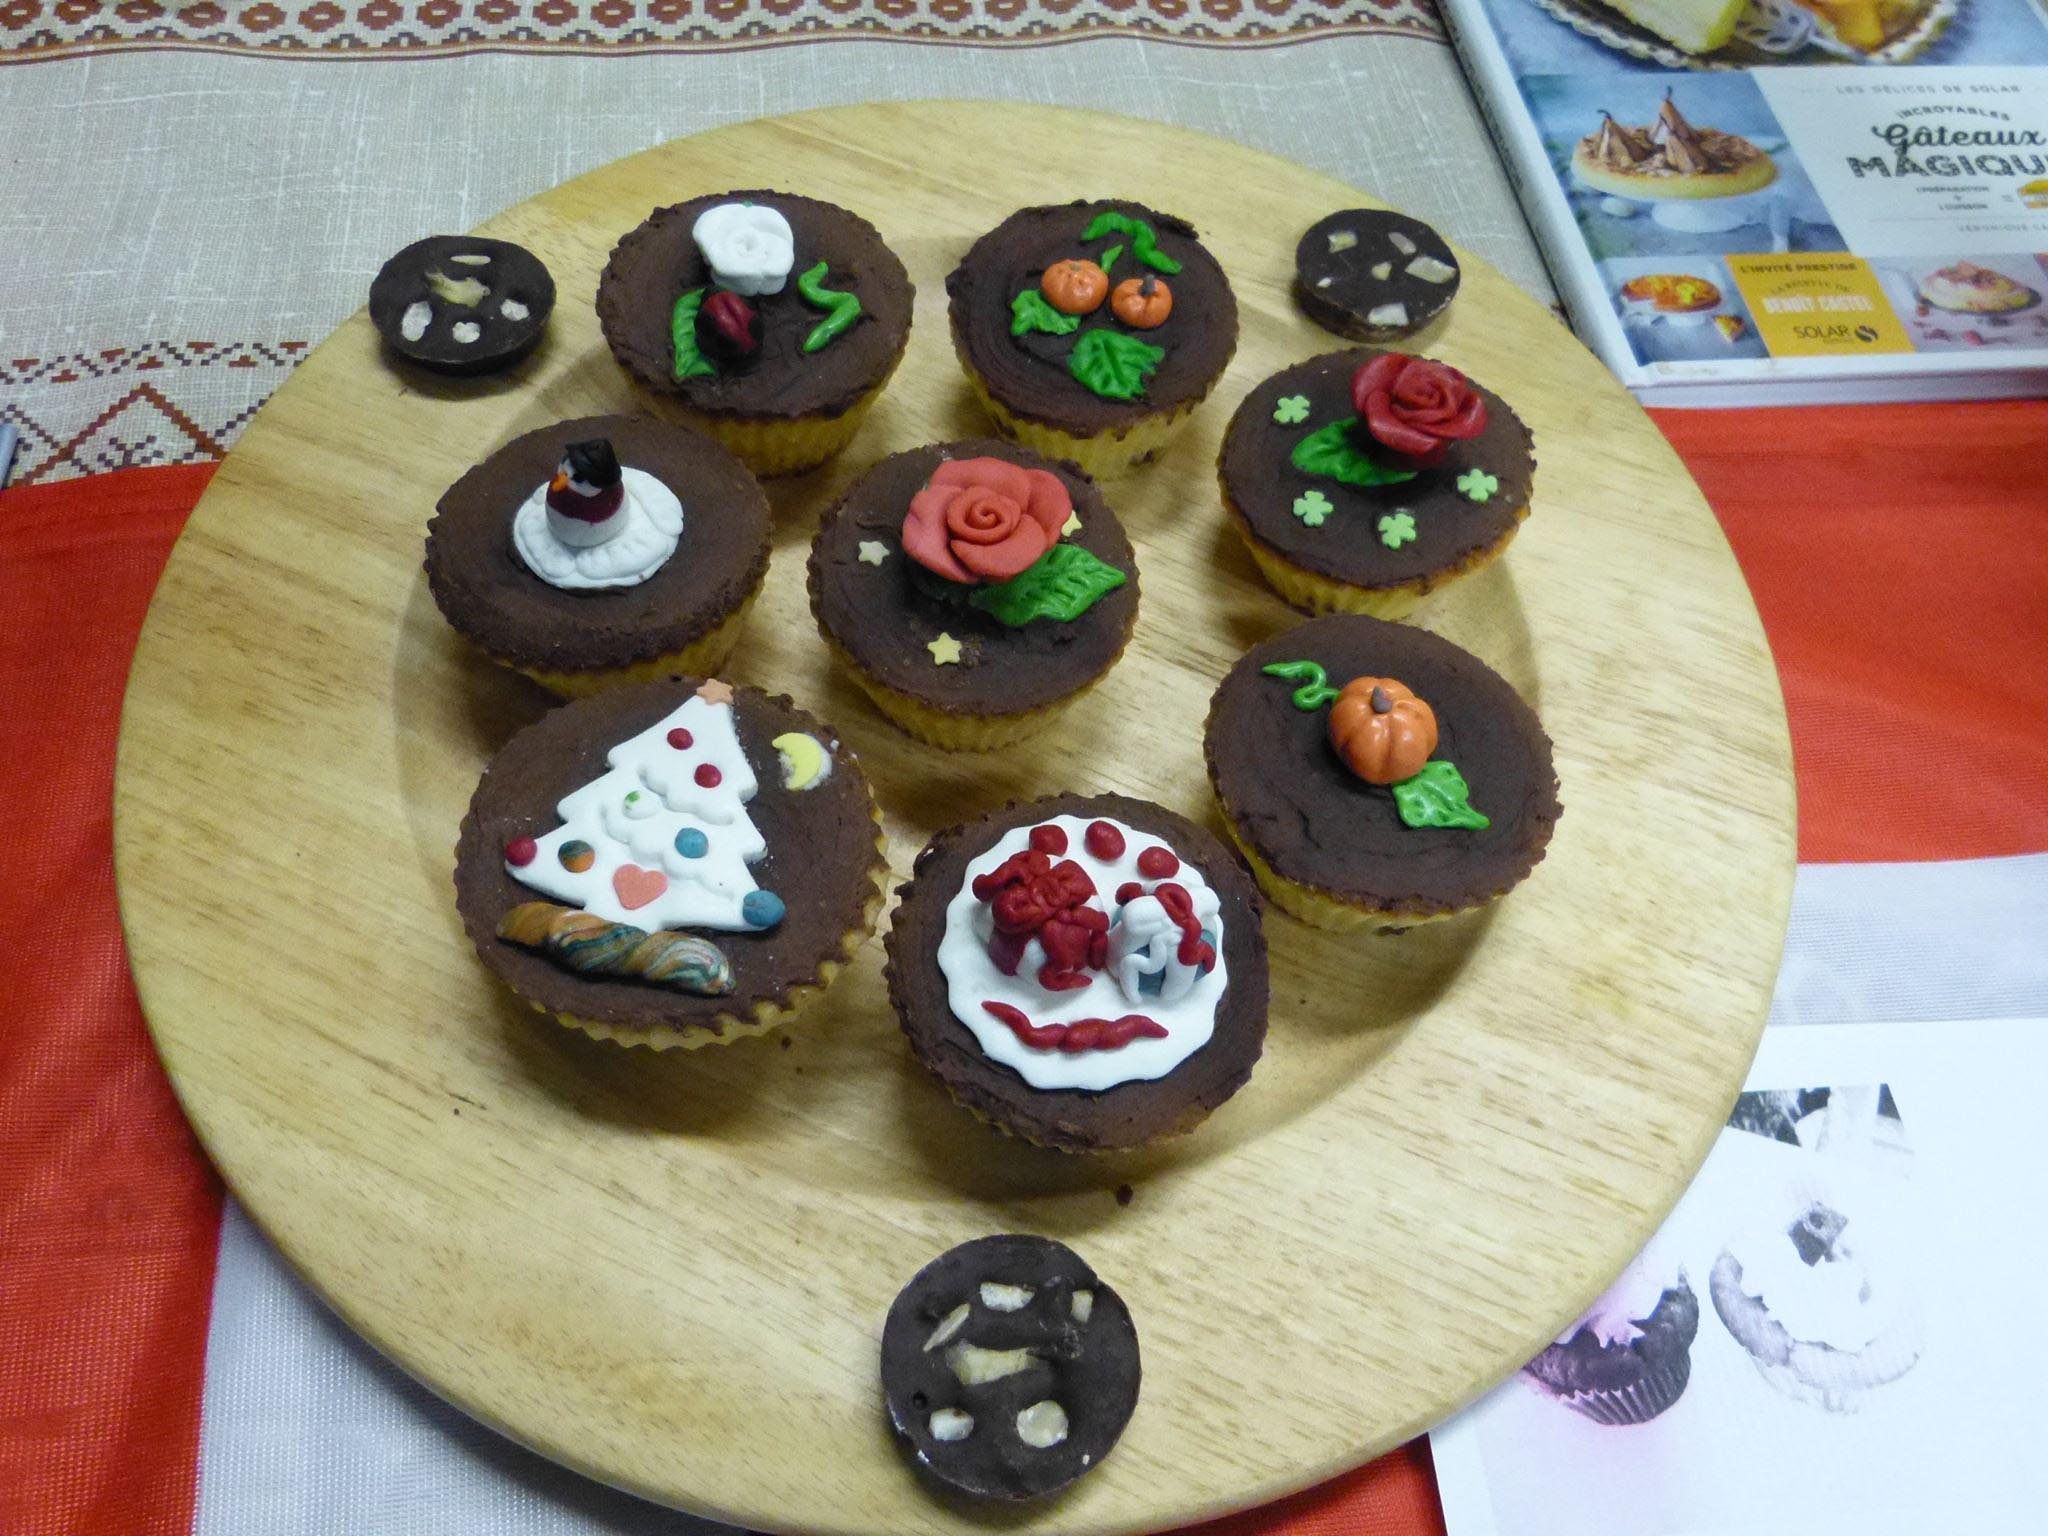 Comment décorer les cupcakes ?